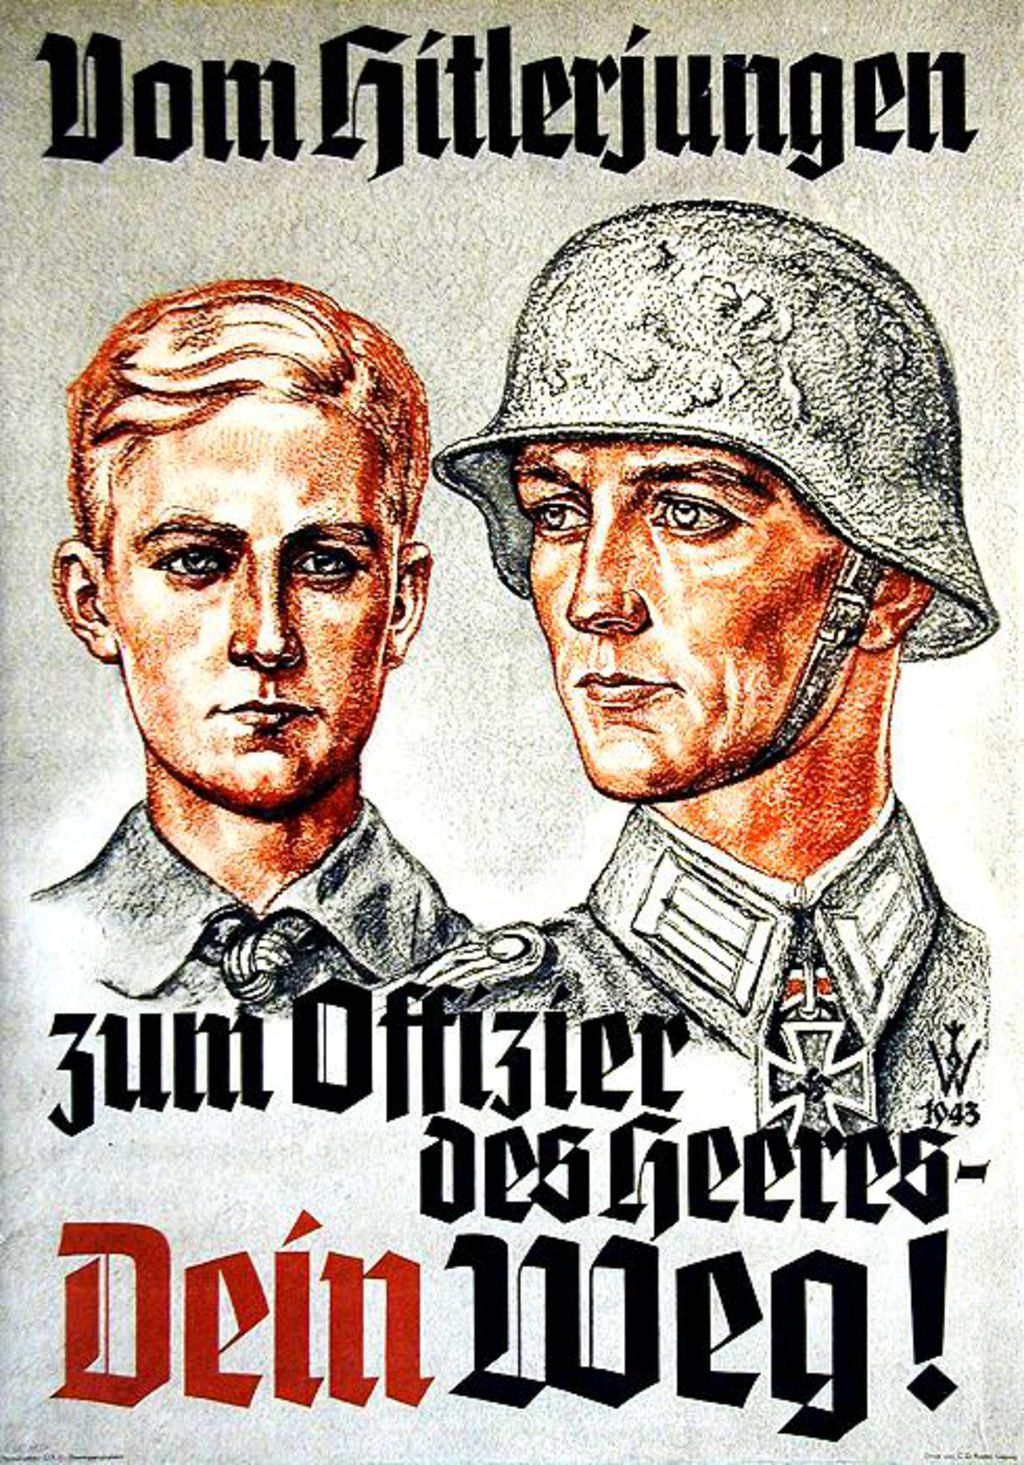 Exponat: Plakat: Anwerbeplakat der Wehrmacht, 1943